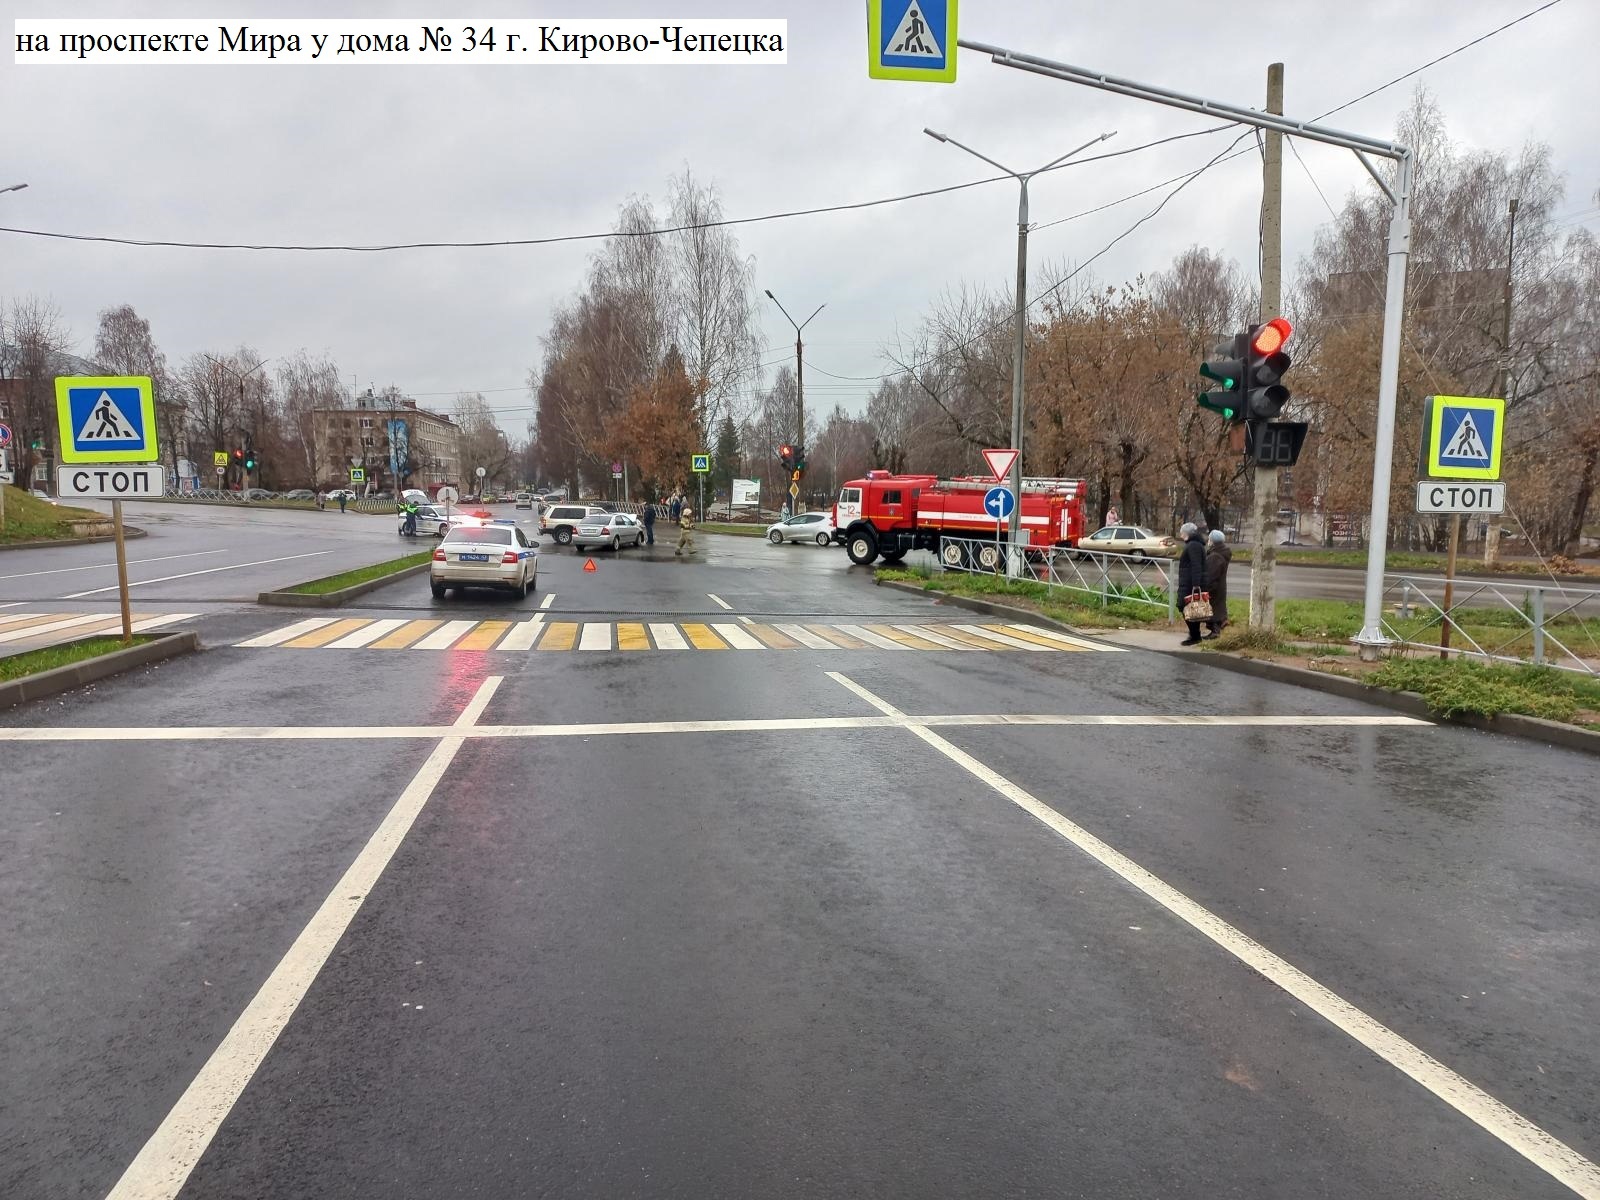 В Кирово-Чепецке при столкновении двух иномарок пострадали мужчина и женщина